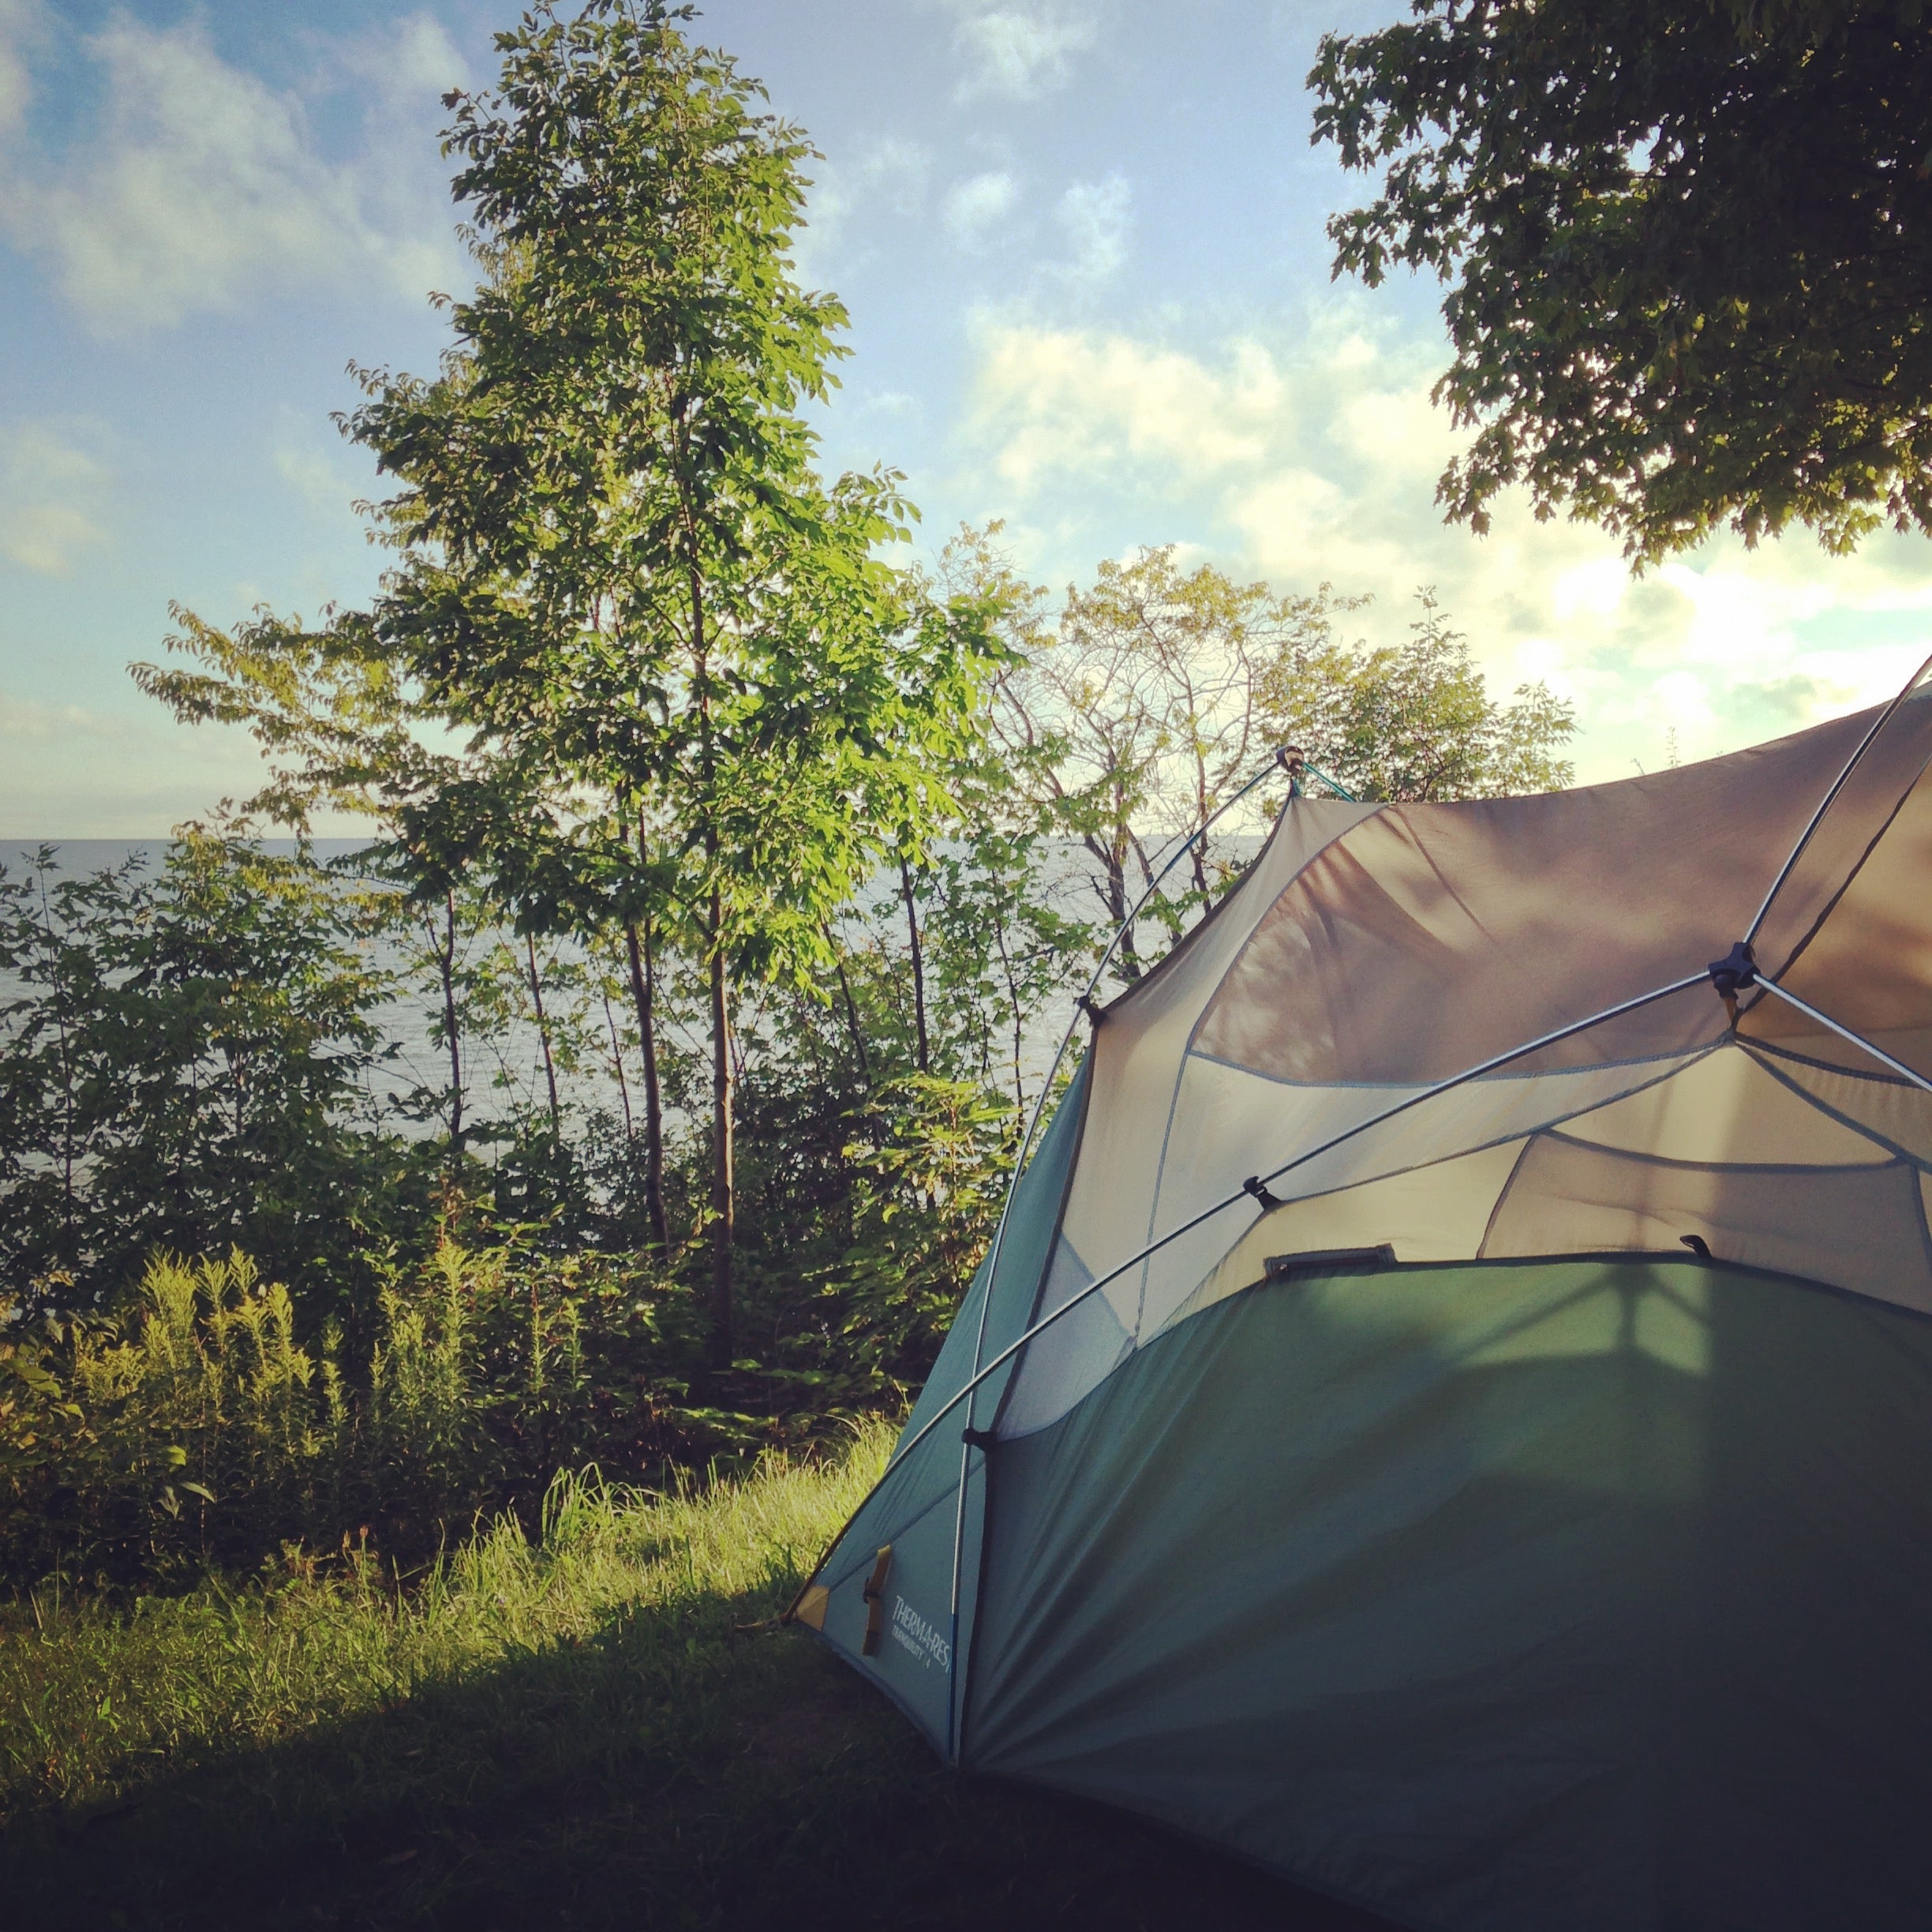 Camping beside Lake Ontario